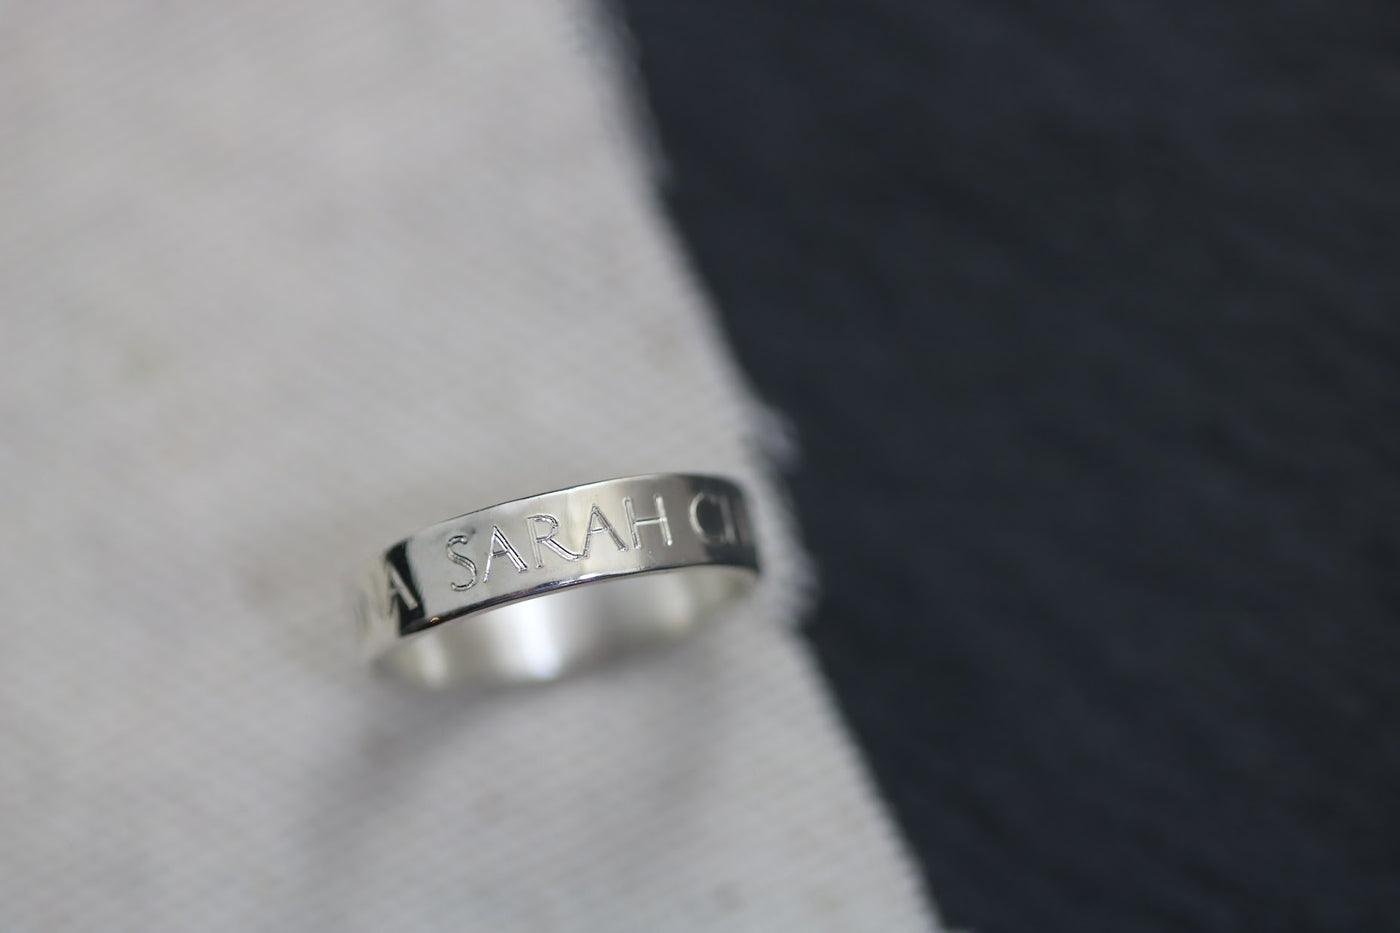 Name Engraved Ring